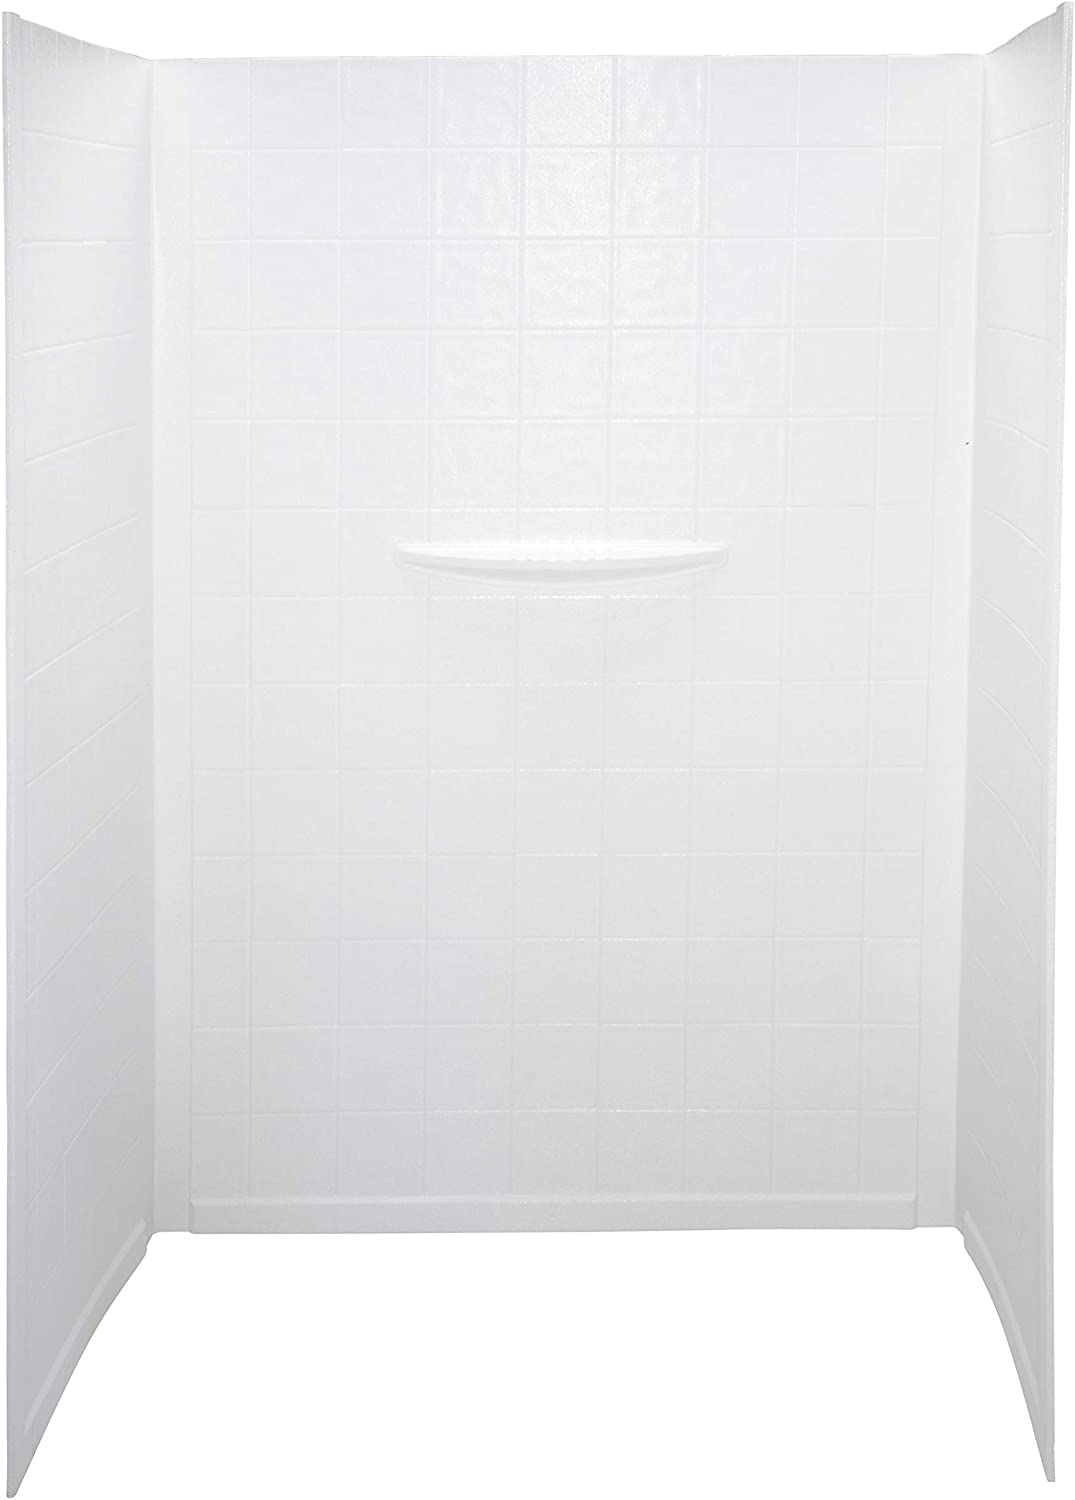 利珀特306207更好的浴缸24″x 40″x 58″RV浴缸环绕墙白色